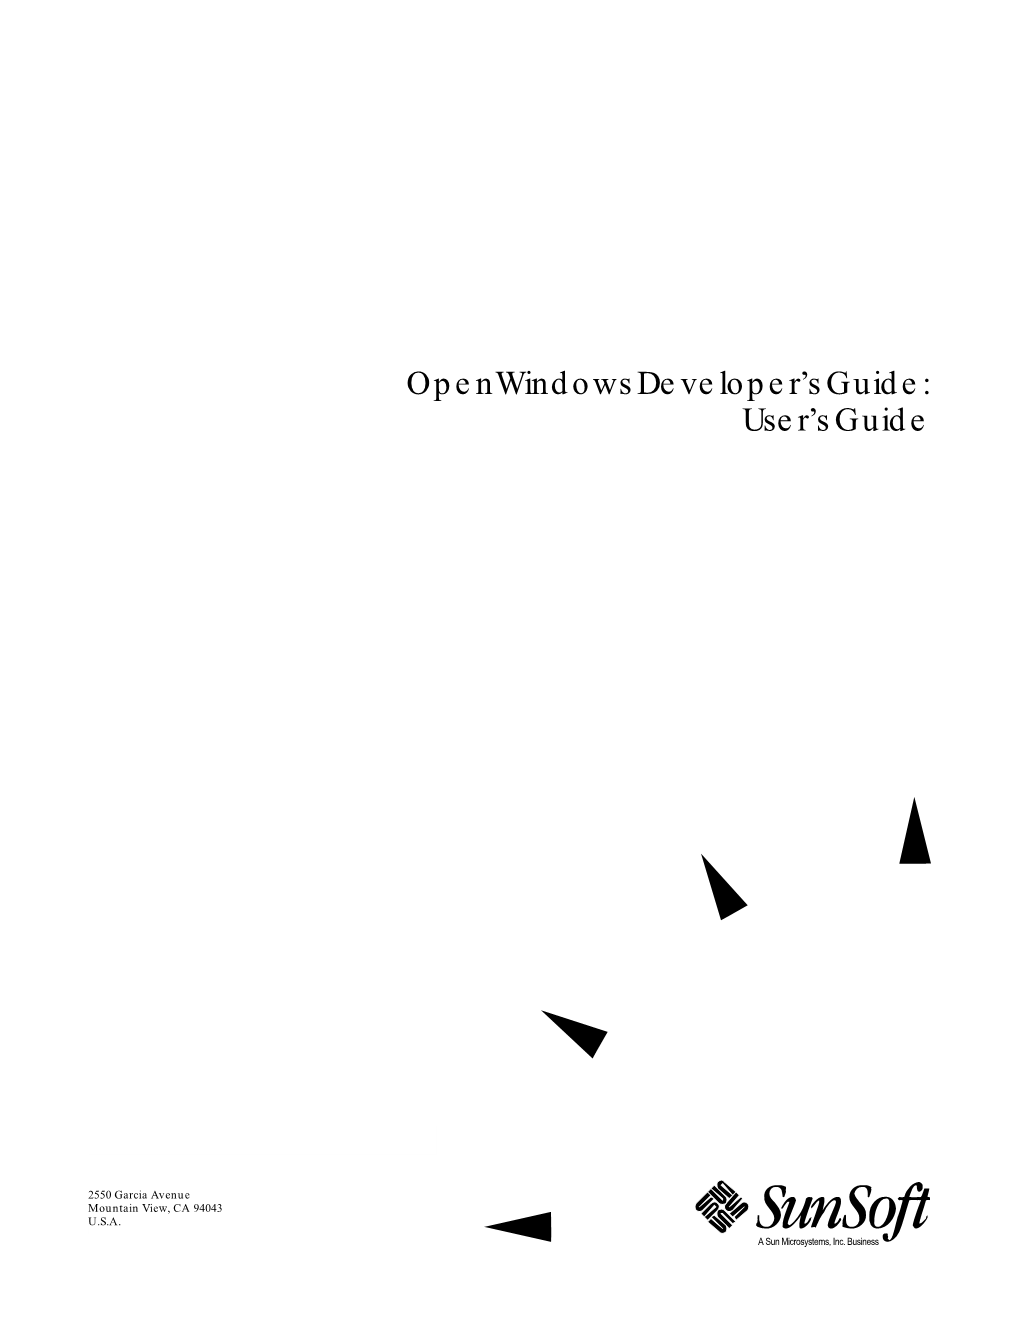 Openwindows Developer's Guide: User's Guide